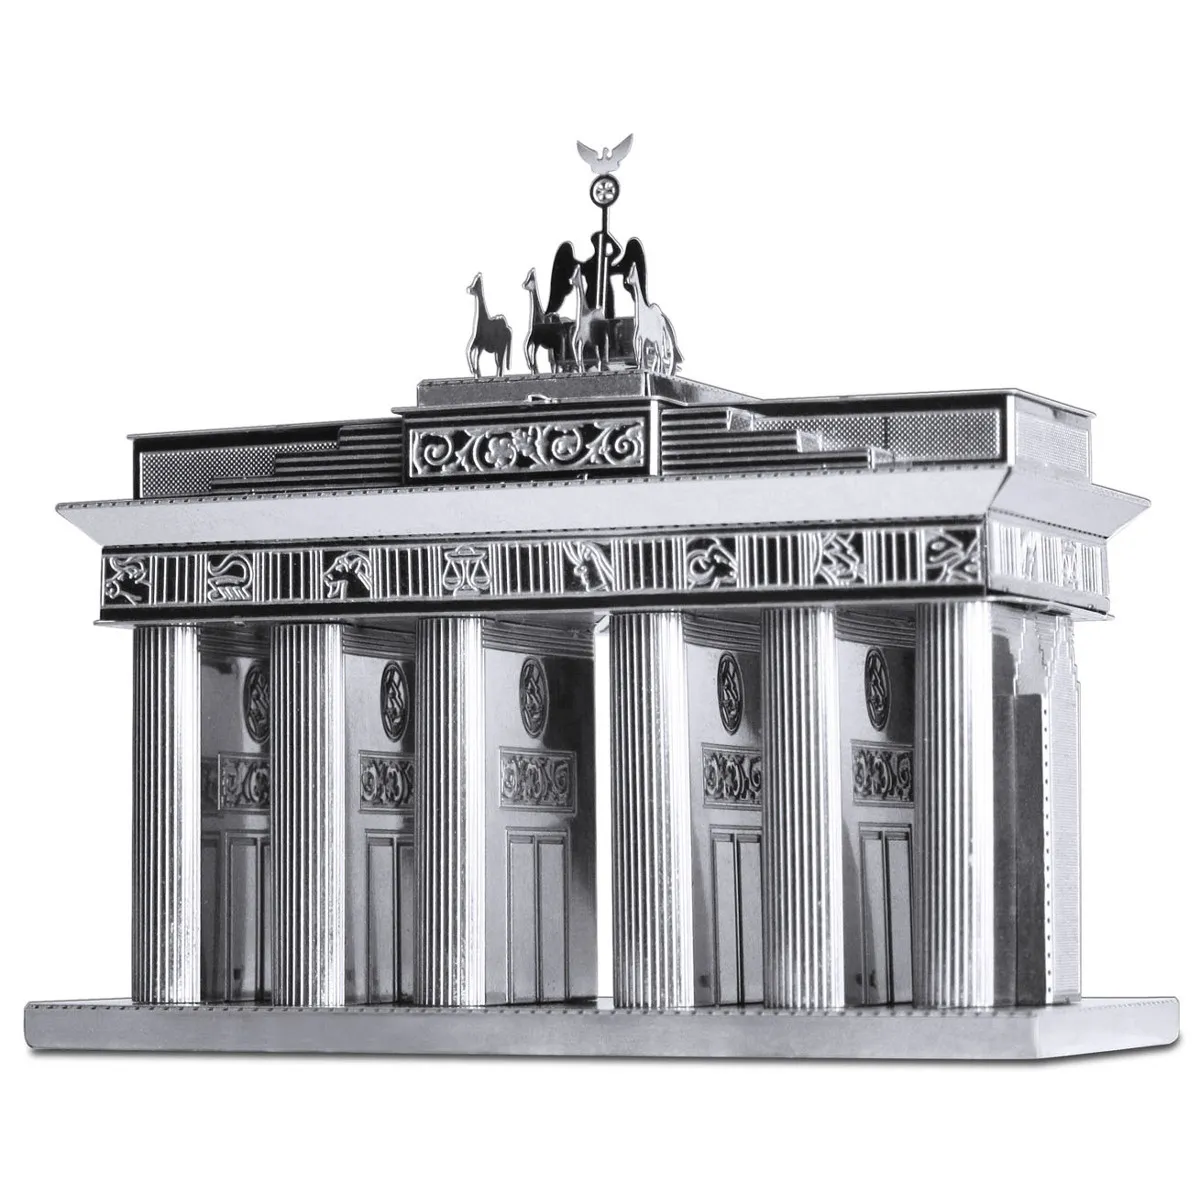 Kit de construction métallique 3D de bâtiments célèbres - Porte de Brandebourg